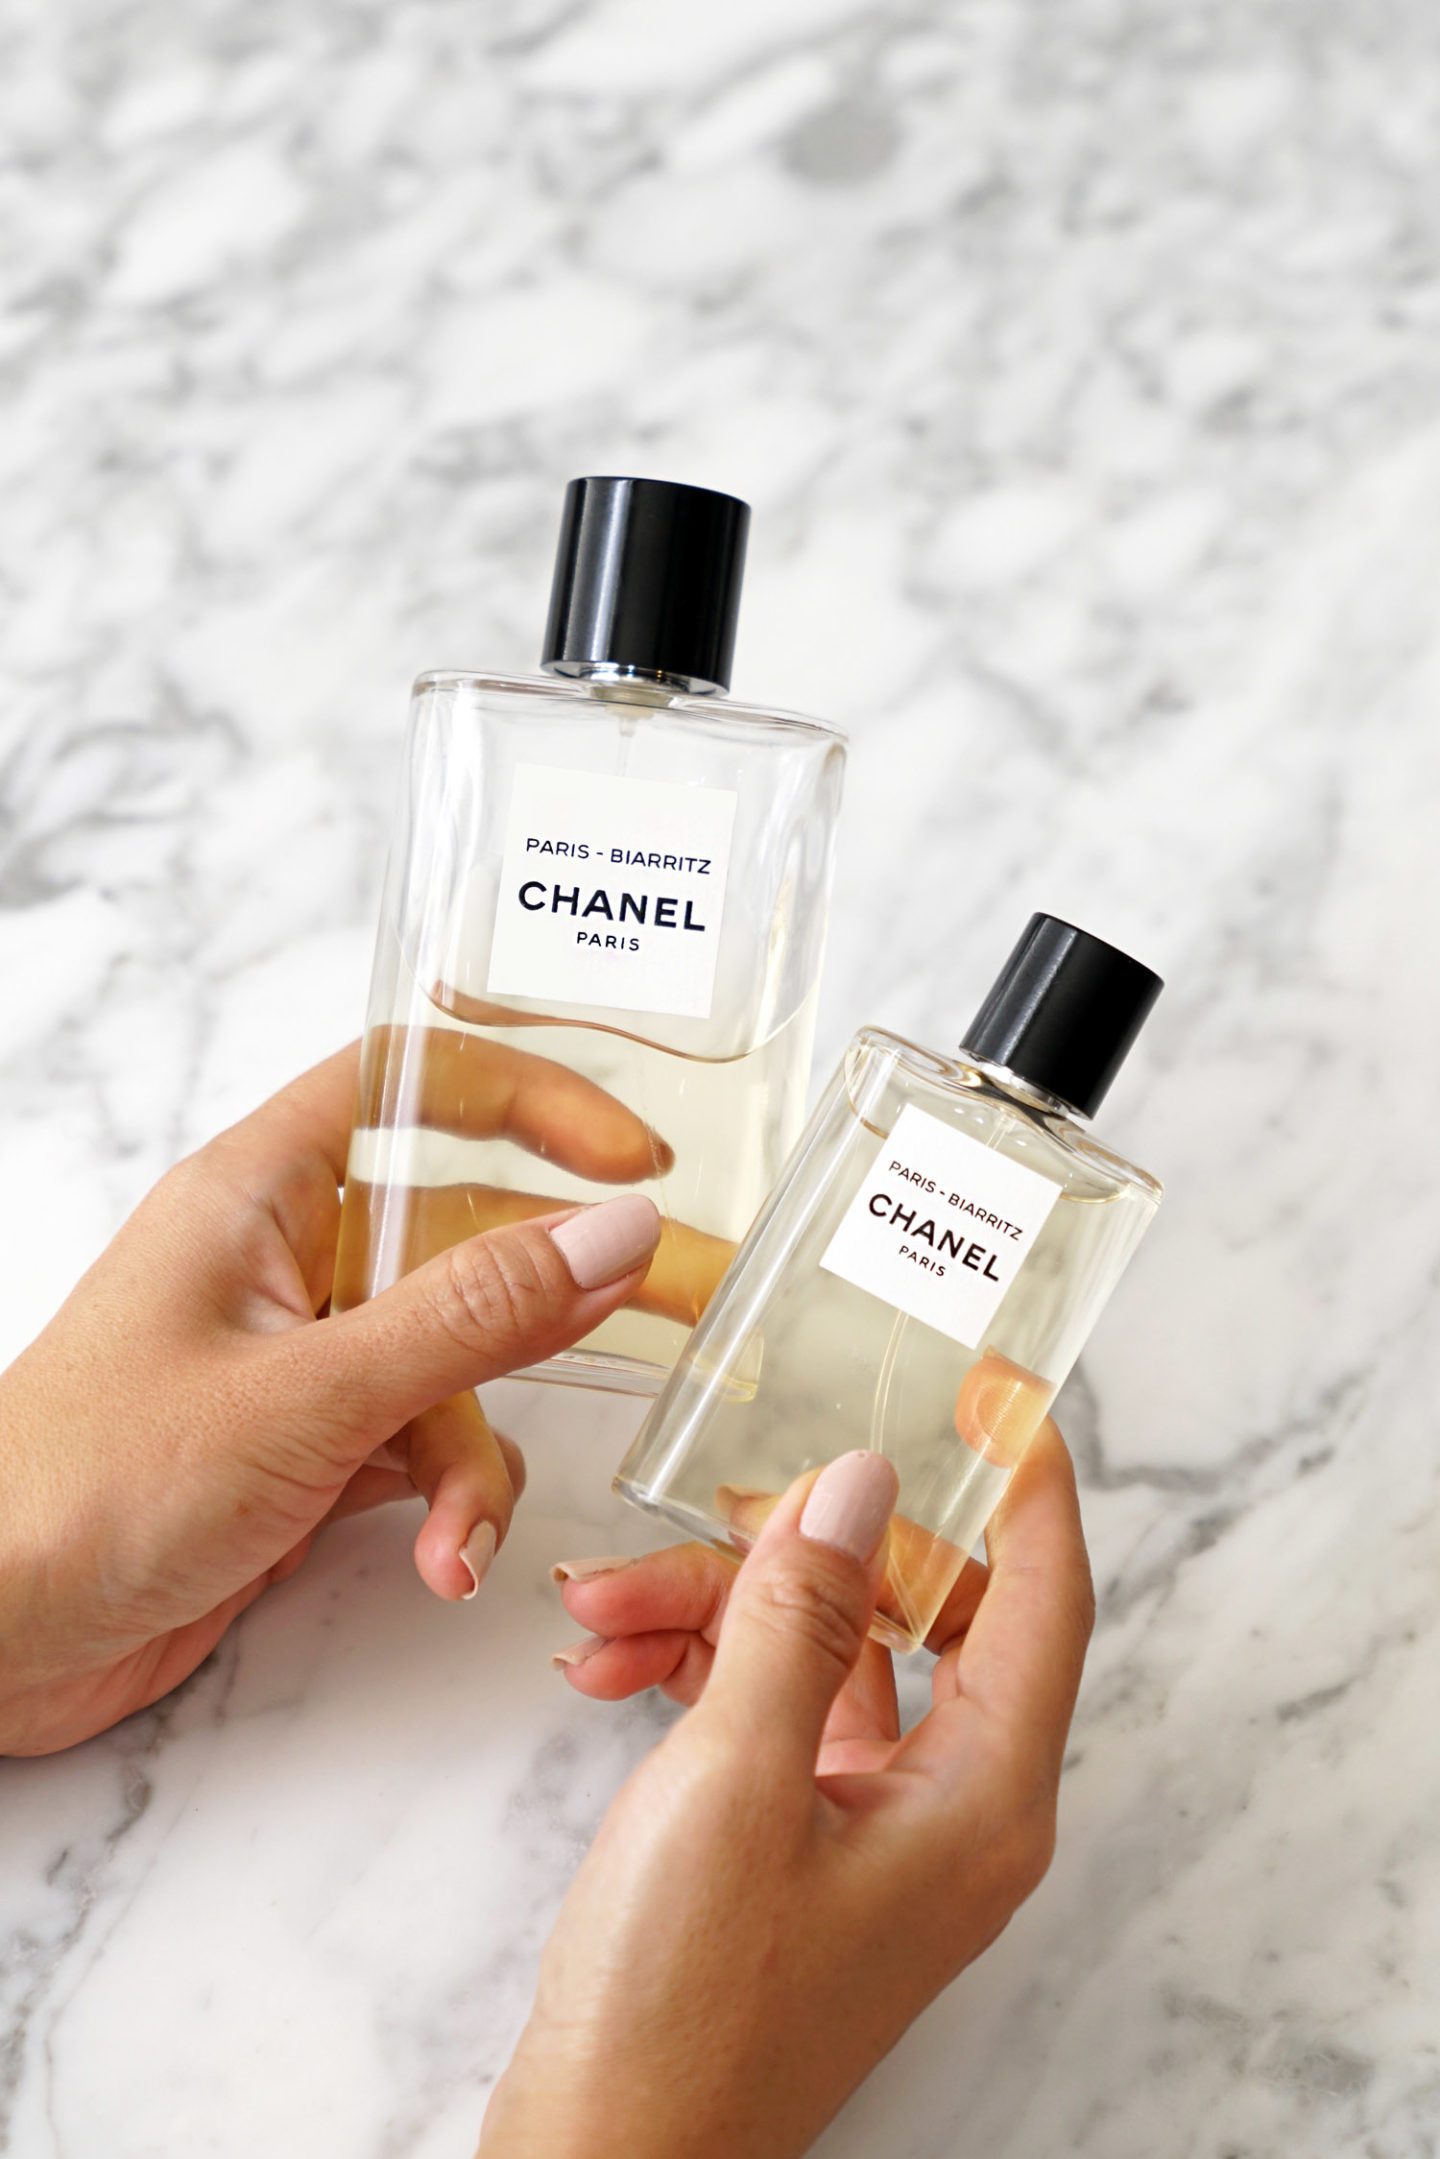 Les Eaux de Chanel Paris-Biarritz Pleine grandeur et taille de voyage | Le look book beauté